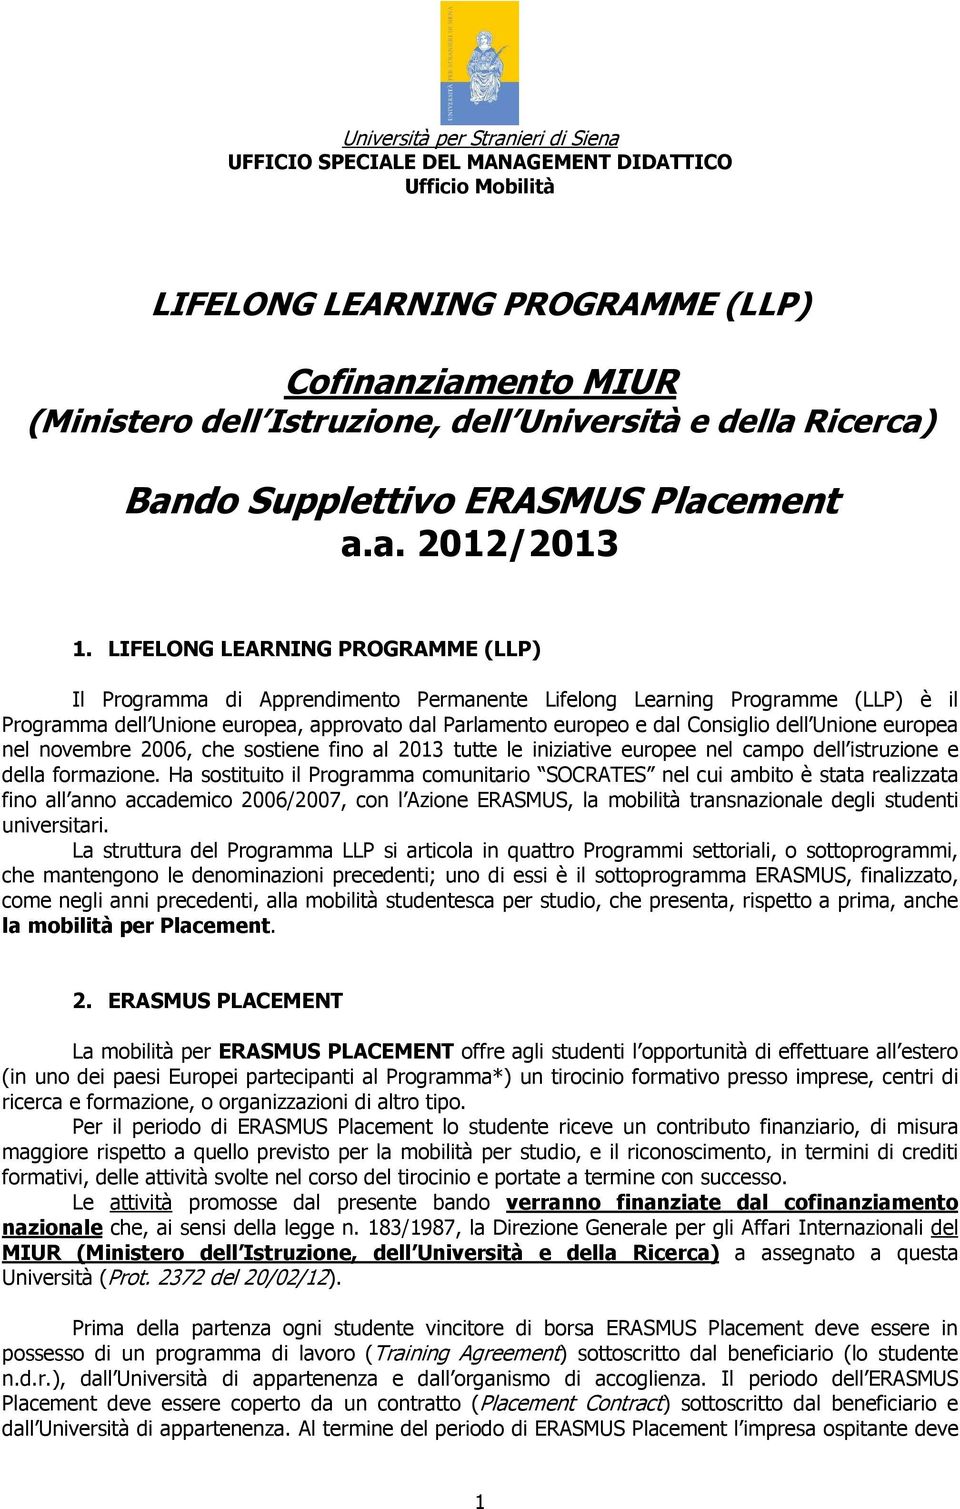 LIFELONG LEARNING PROGRAMME (LLP) Il Programma di Apprendimento Permanente Lifelong Learning Programme (LLP) è il Programma dell Unione europea, approvato dal Parlamento europeo e dal Consiglio dell